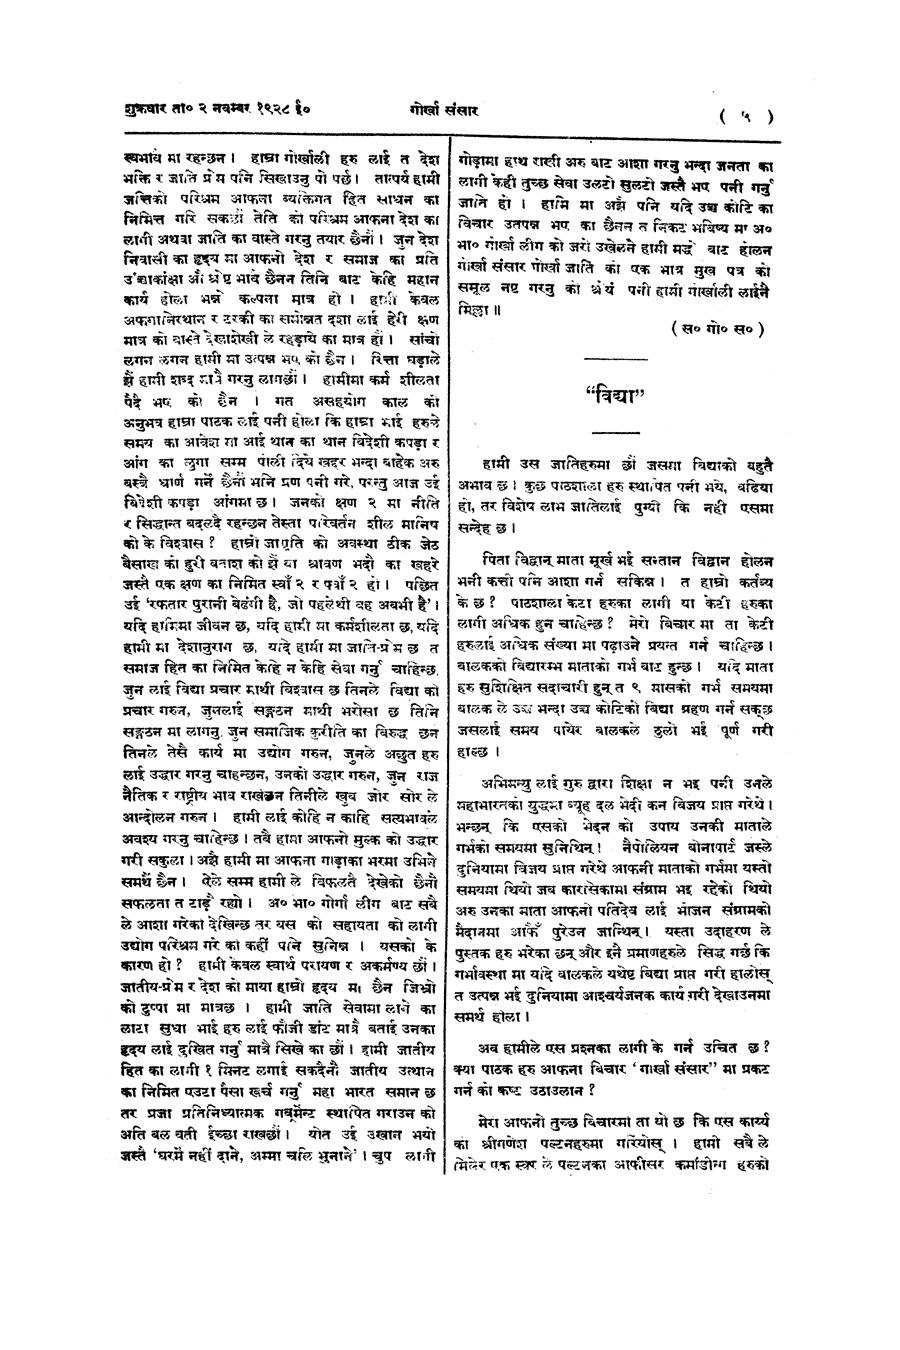 Gorkha Sansar, 2 Nov 1928, page 5